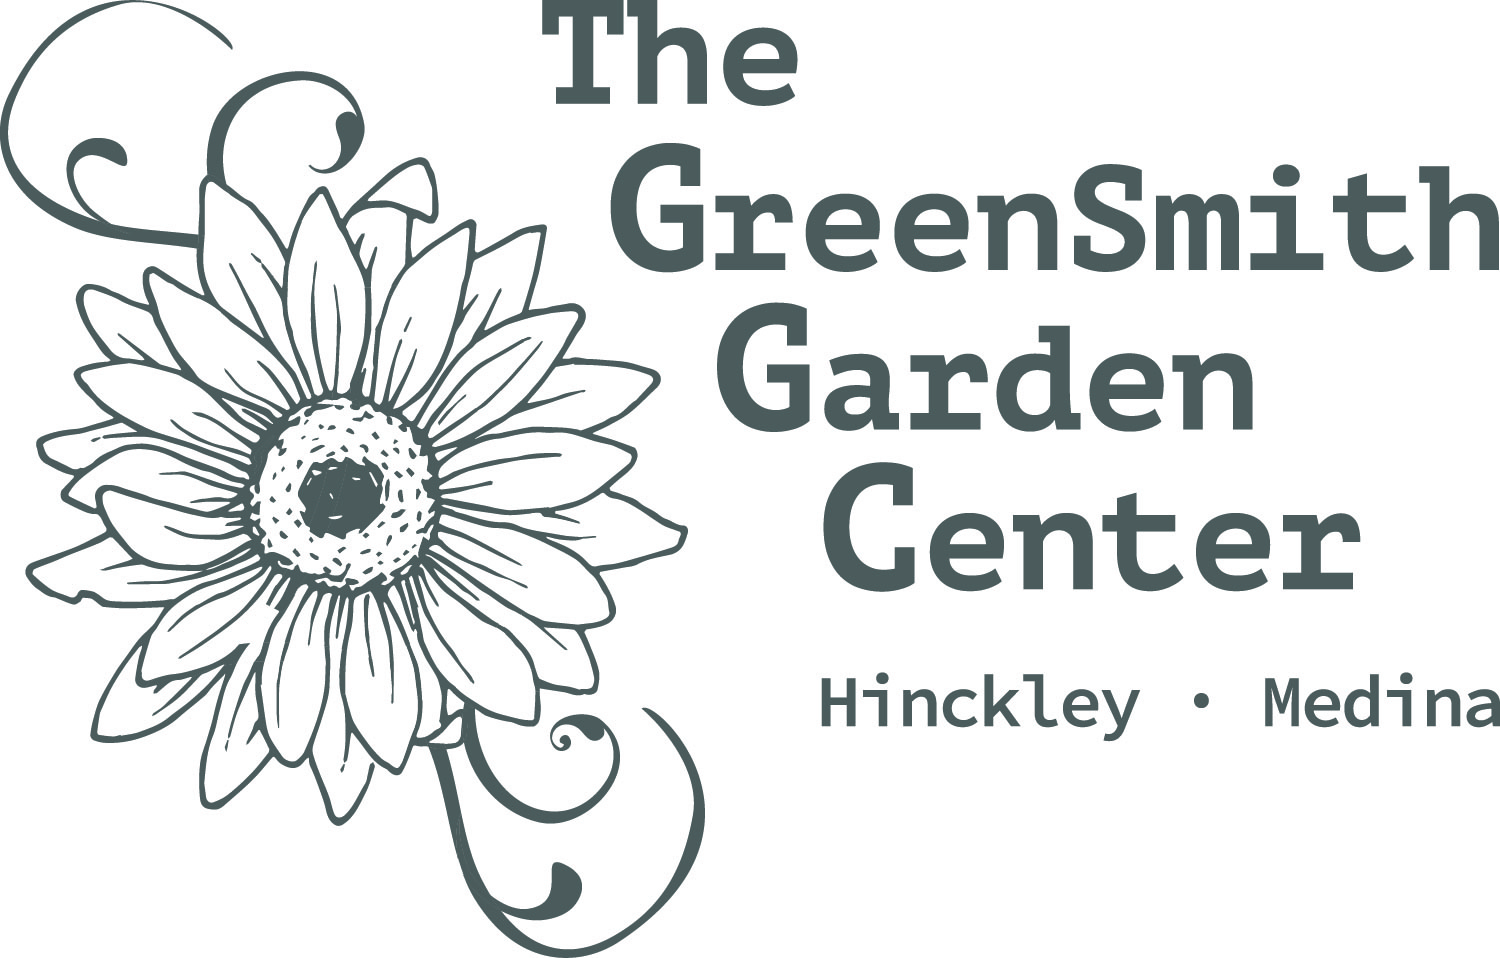 The Greensmith Garden Center & Gift Shop